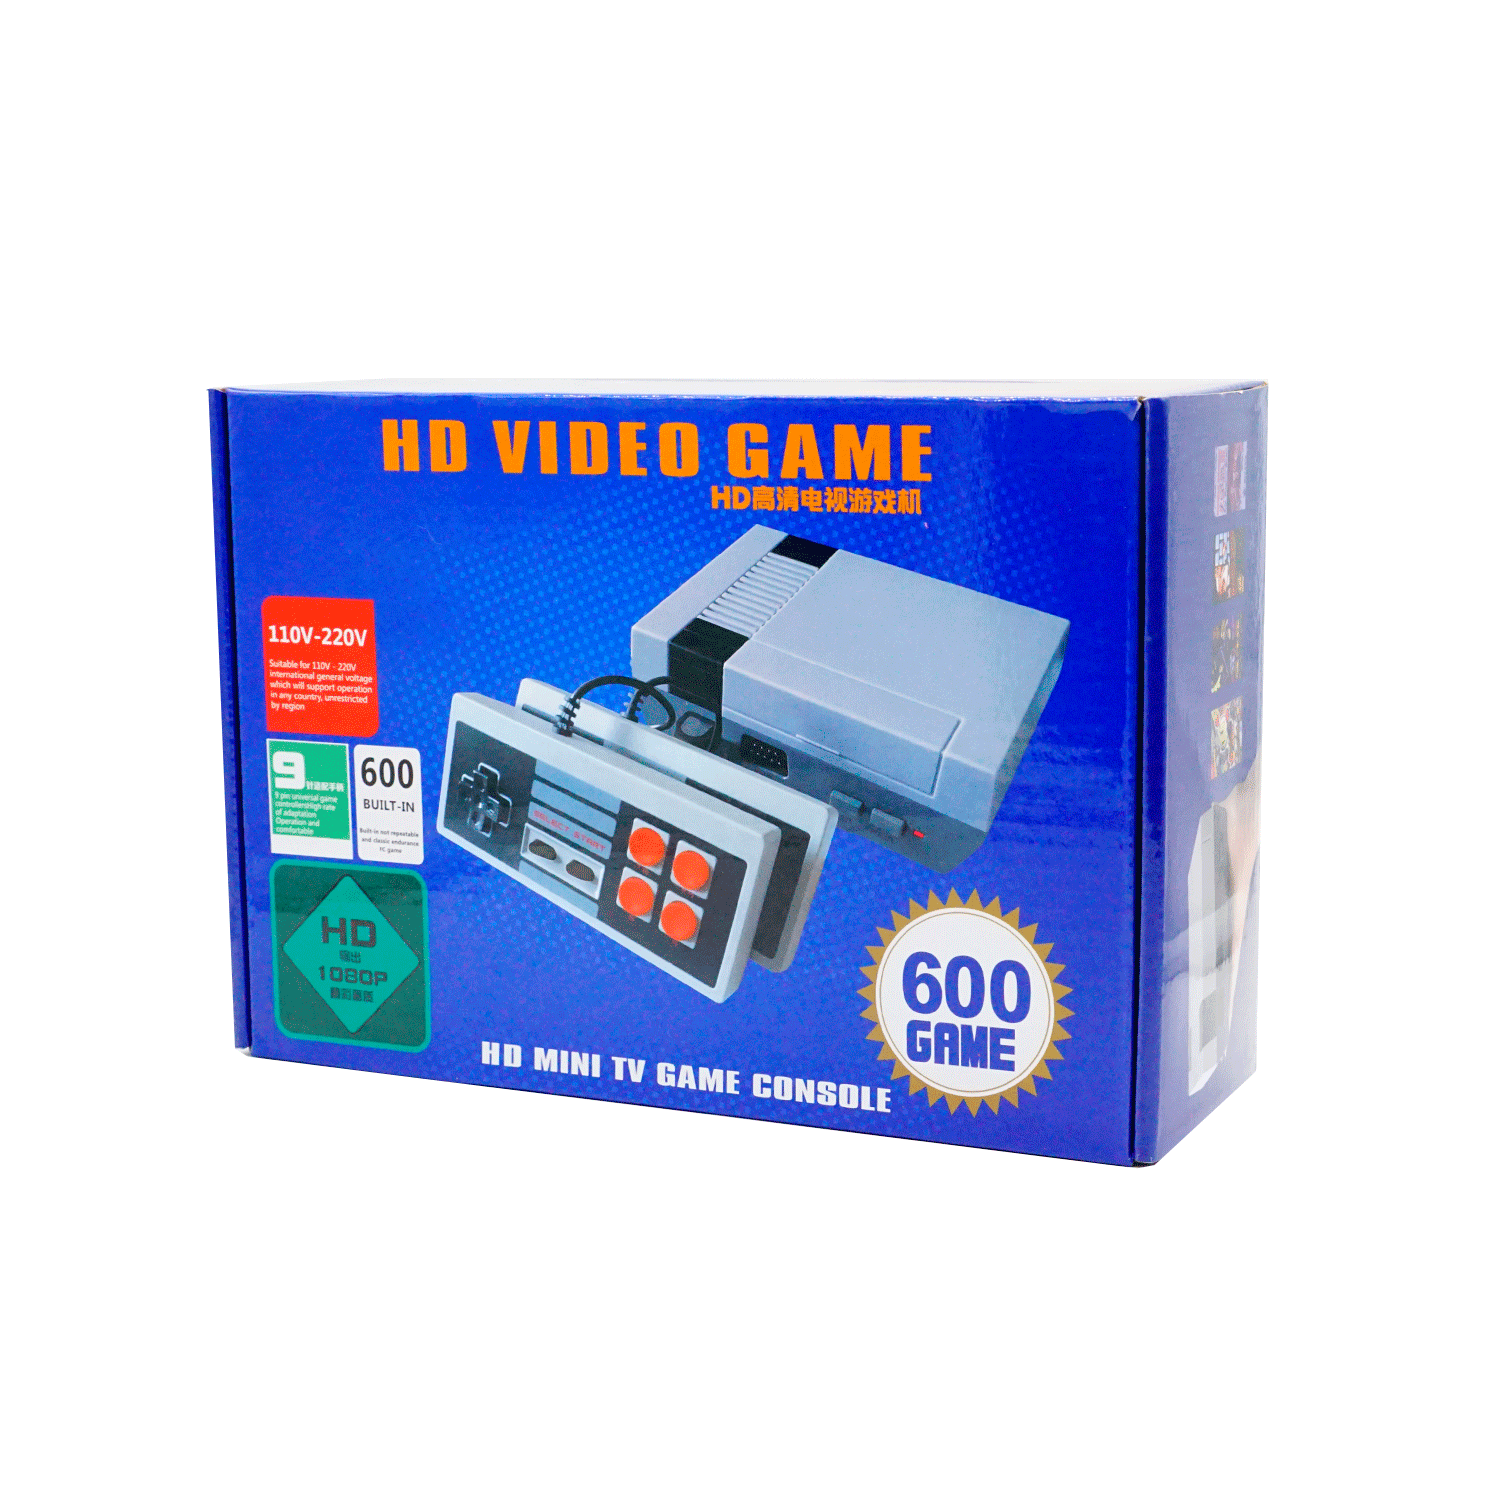 Mini Console Game 600 Jogos HD Video / HDMI 1080 110 / 220V